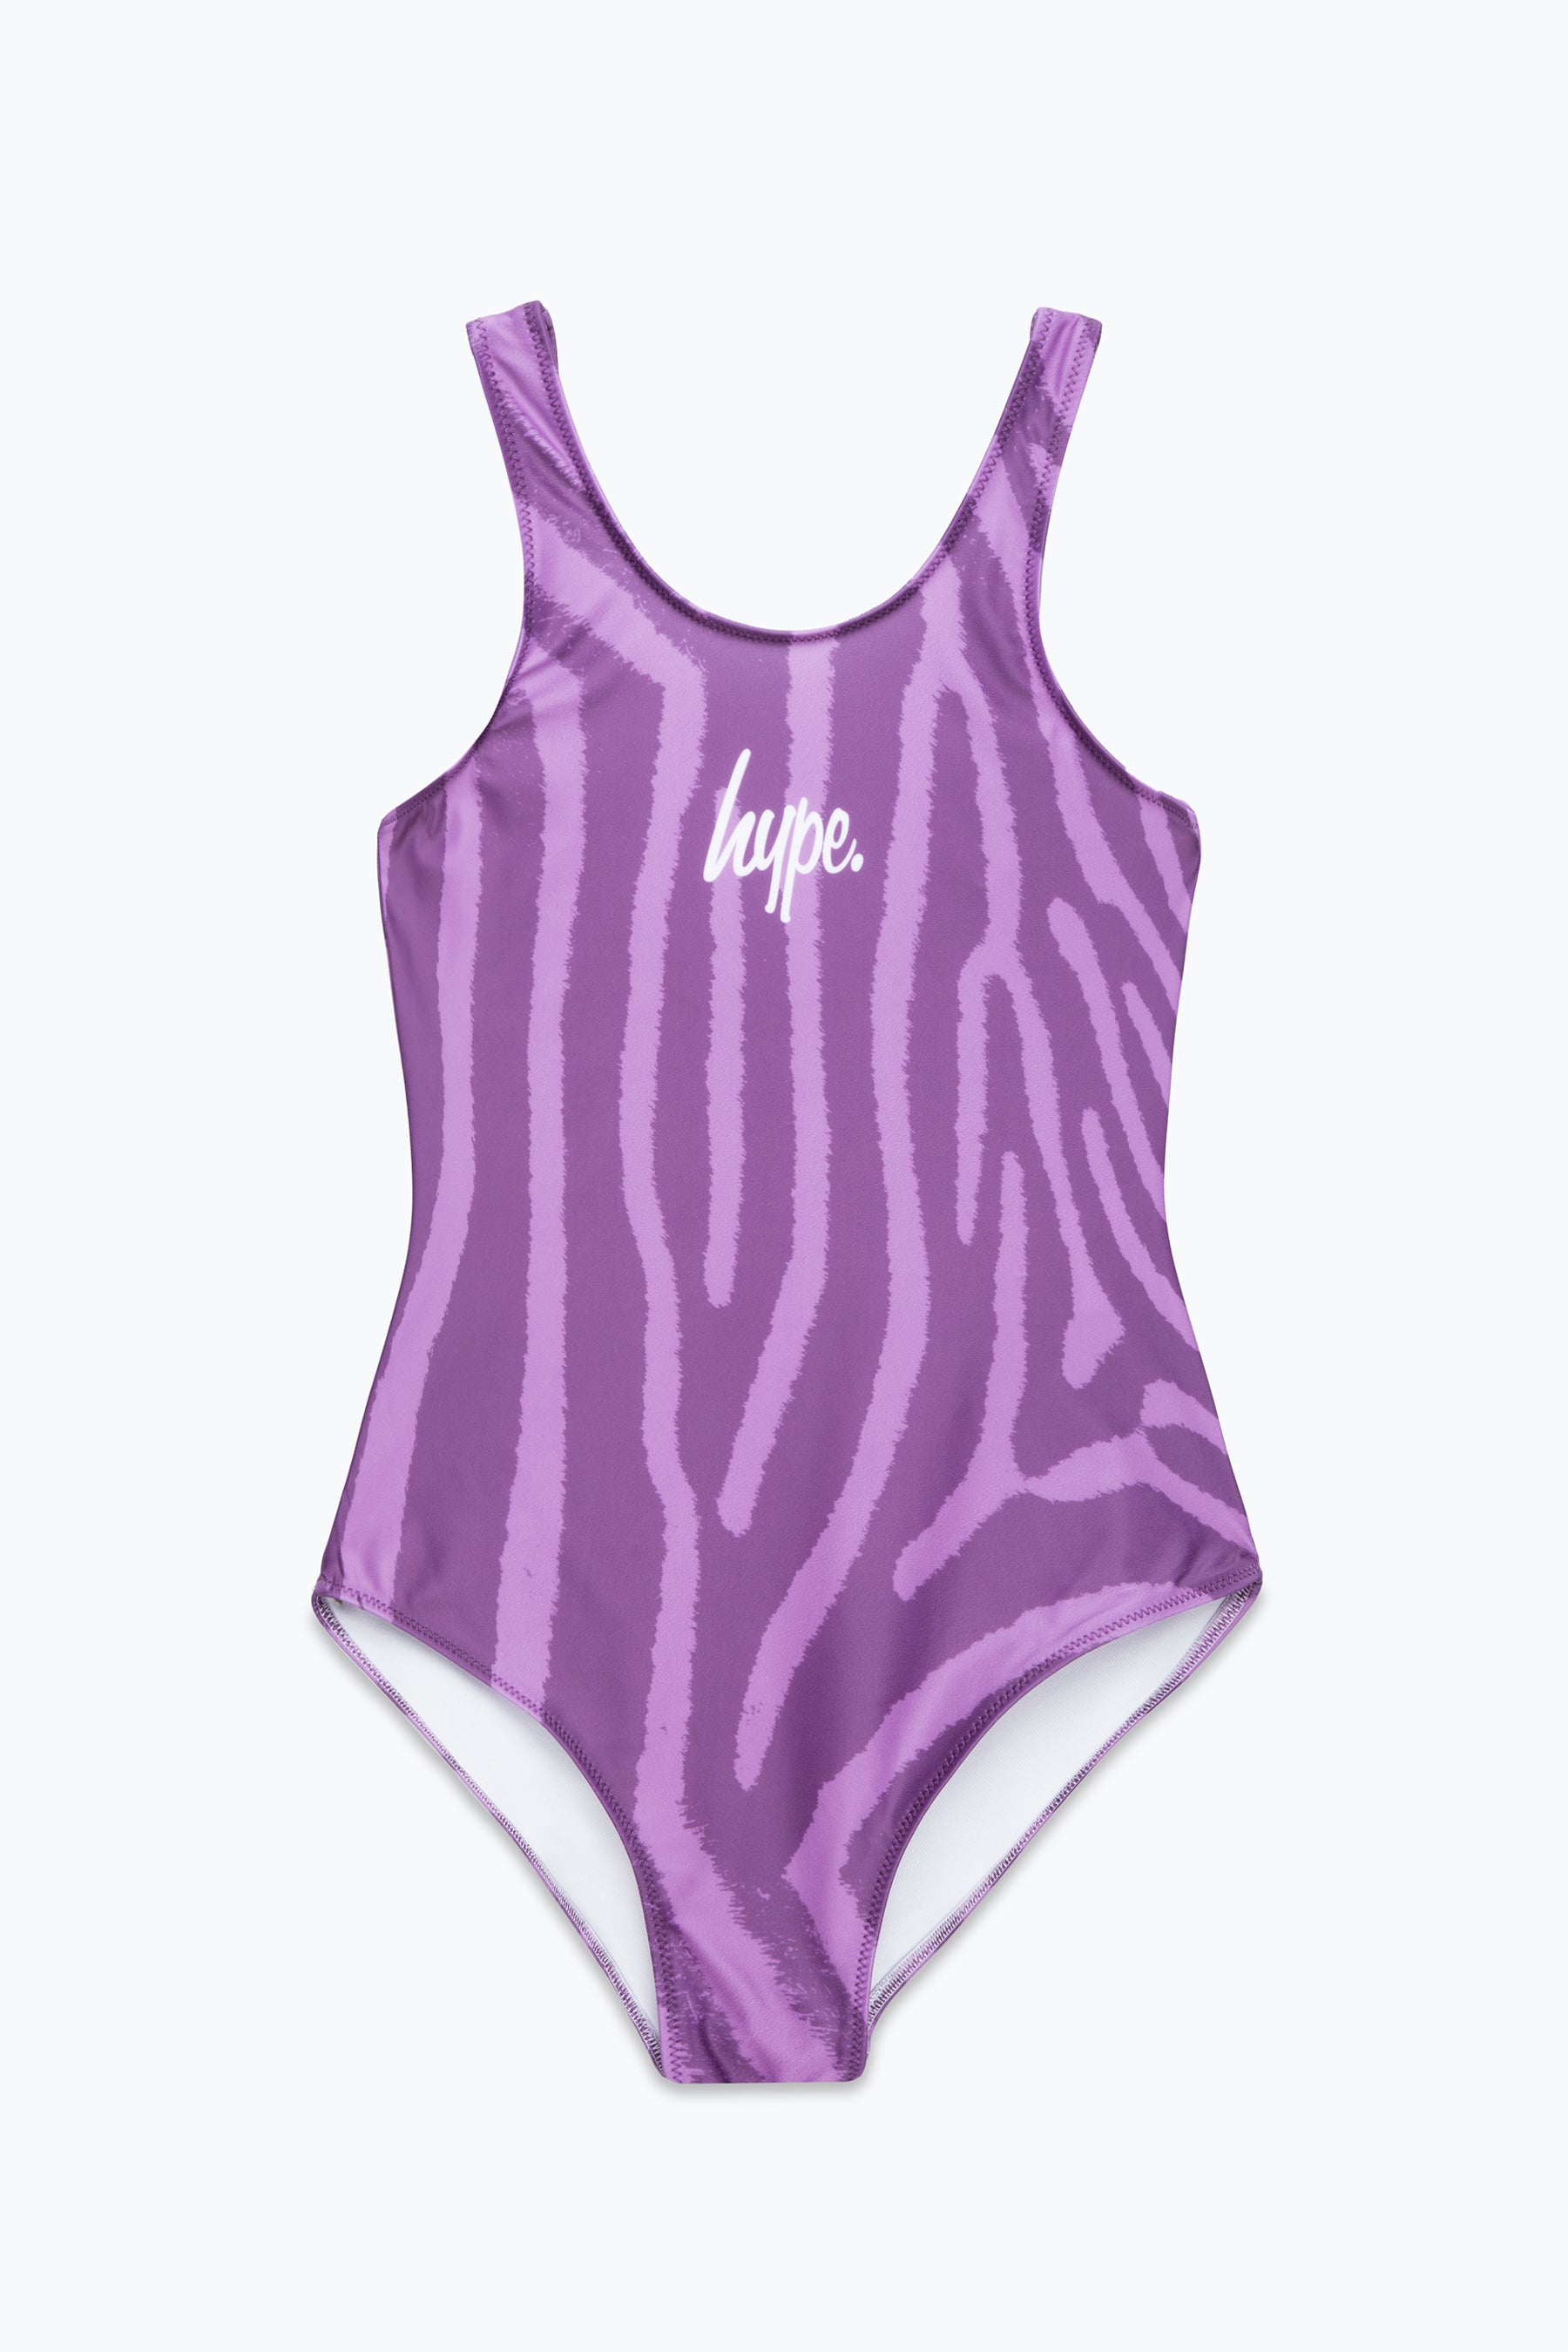 hype girls purple zebra swimsuit